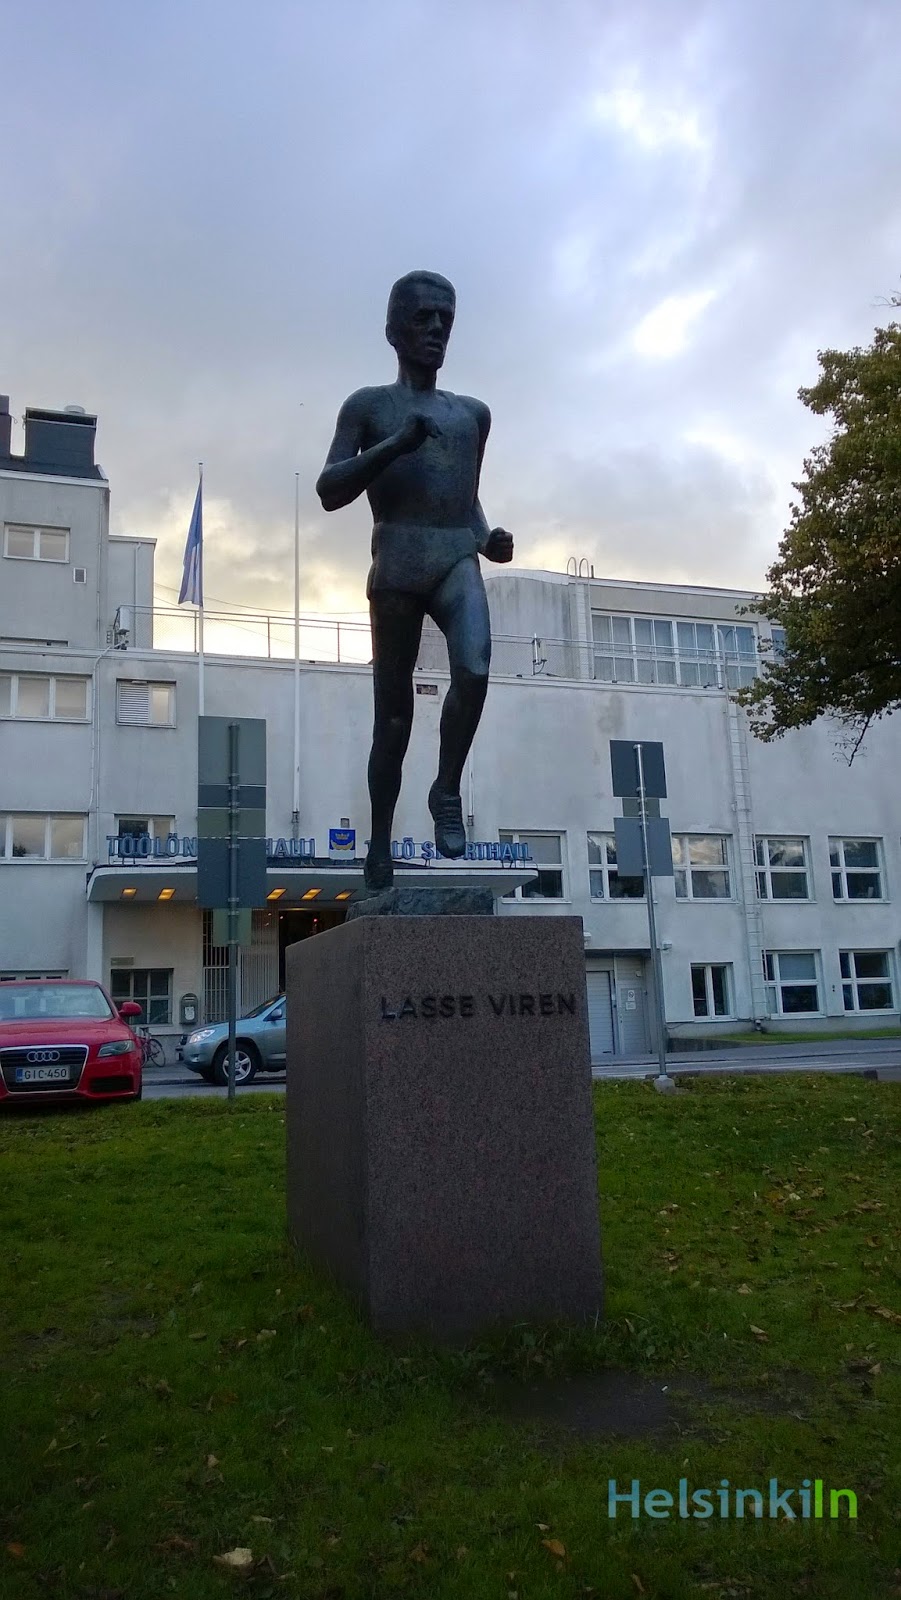 Lasse Virén statue